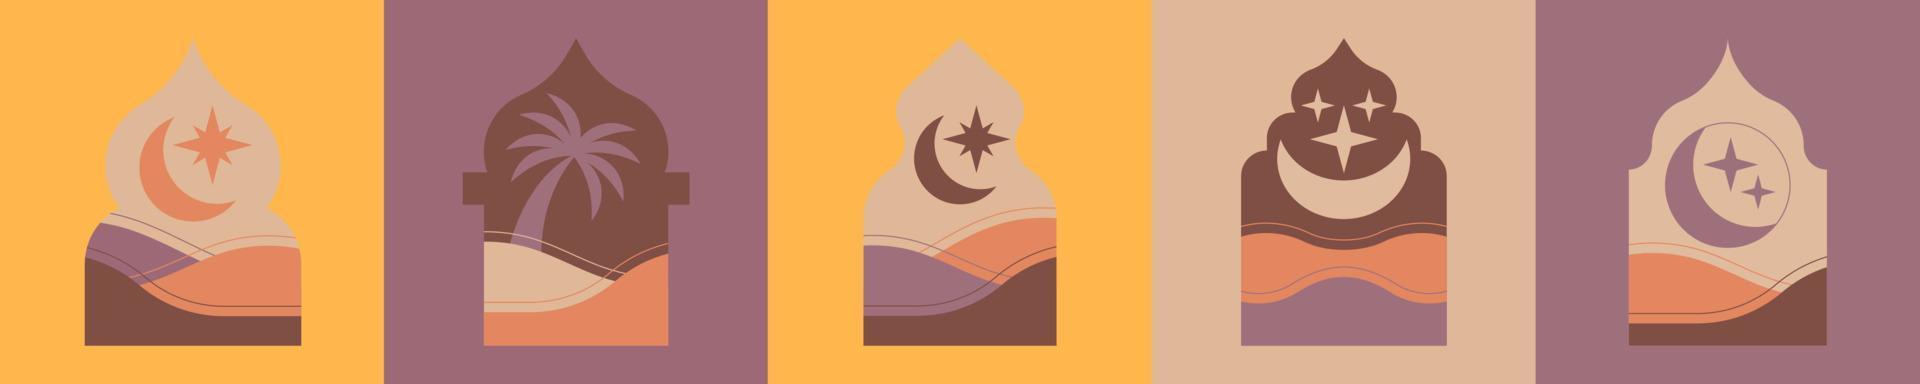 sammlung des islamischen minimalen bogentürrahmens mit sanddüne, palme und halbmondhintergrund für ramadan kareem grußkarte. vektor